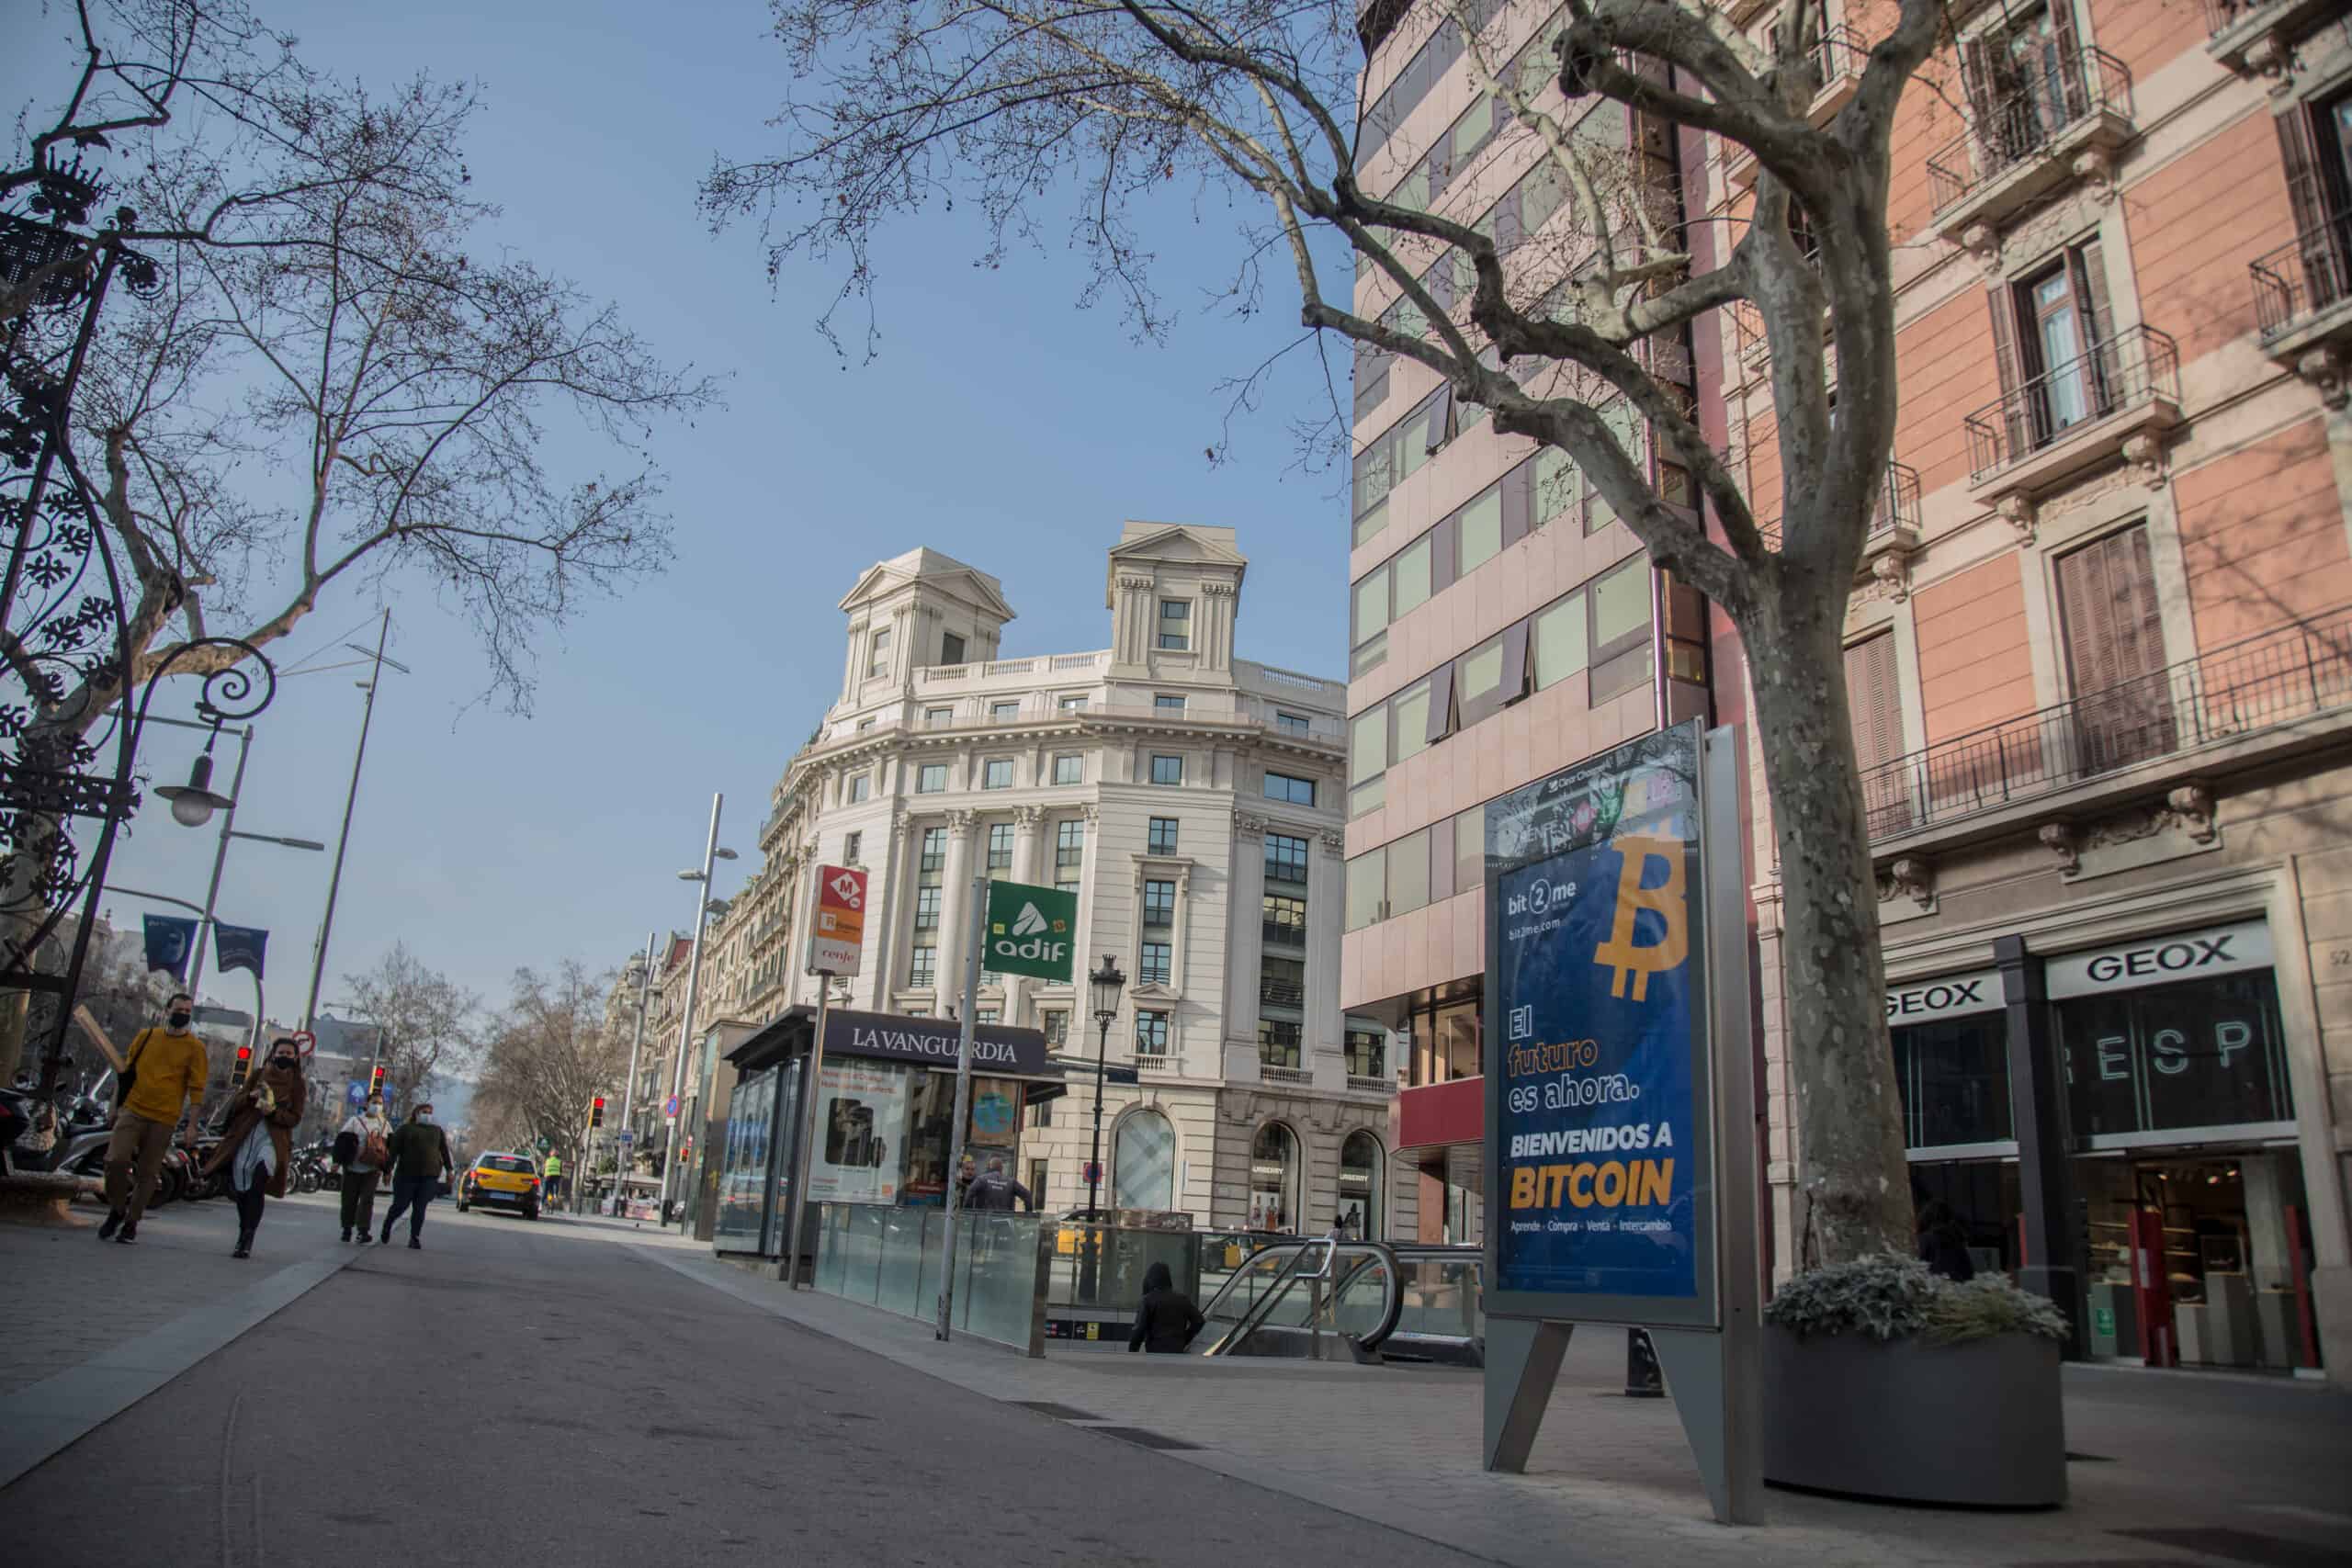 Bitcoin inunda las calles Madrid